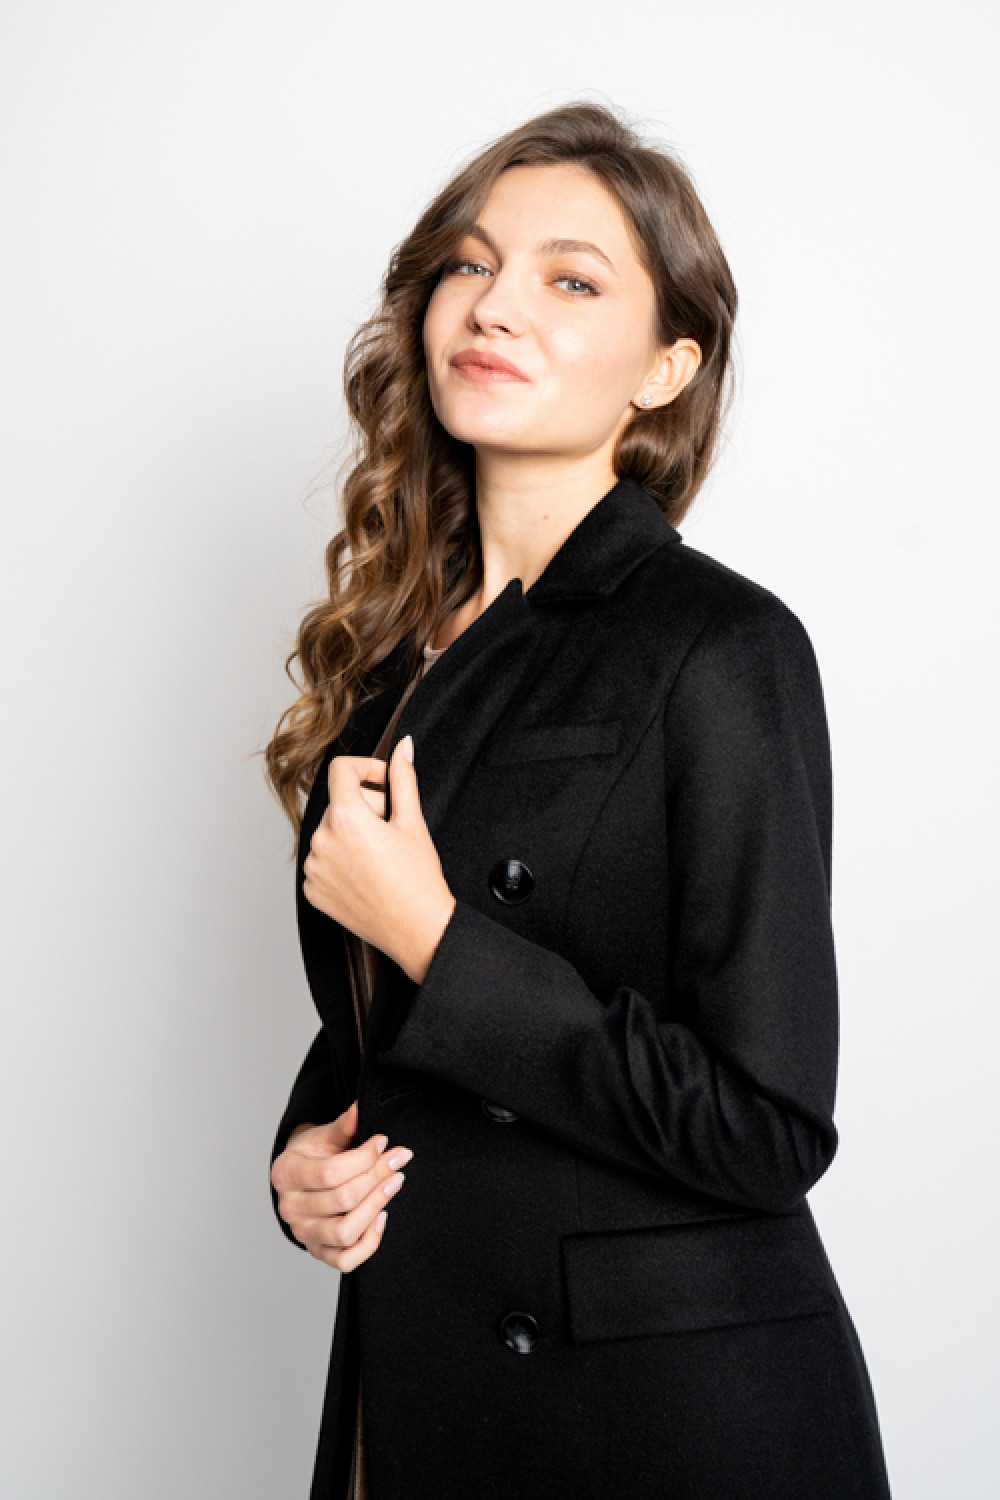 Пальто женское длинное приталенное AS091m/черный